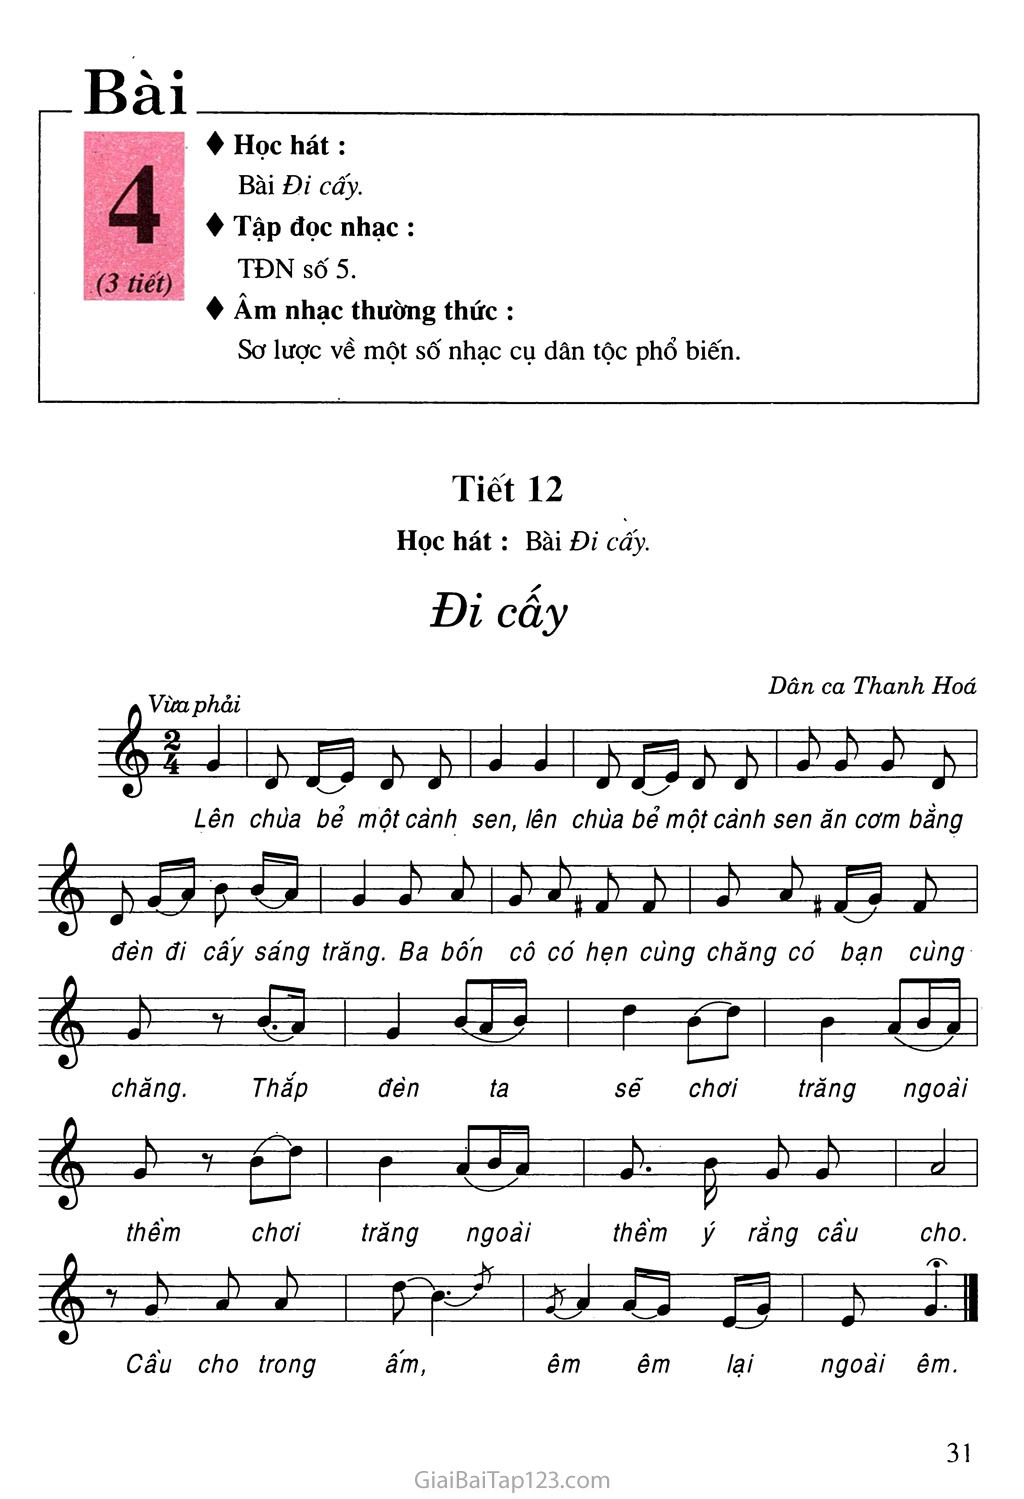 Tiết 12. Học hát: Bài Đi cấy trang 1